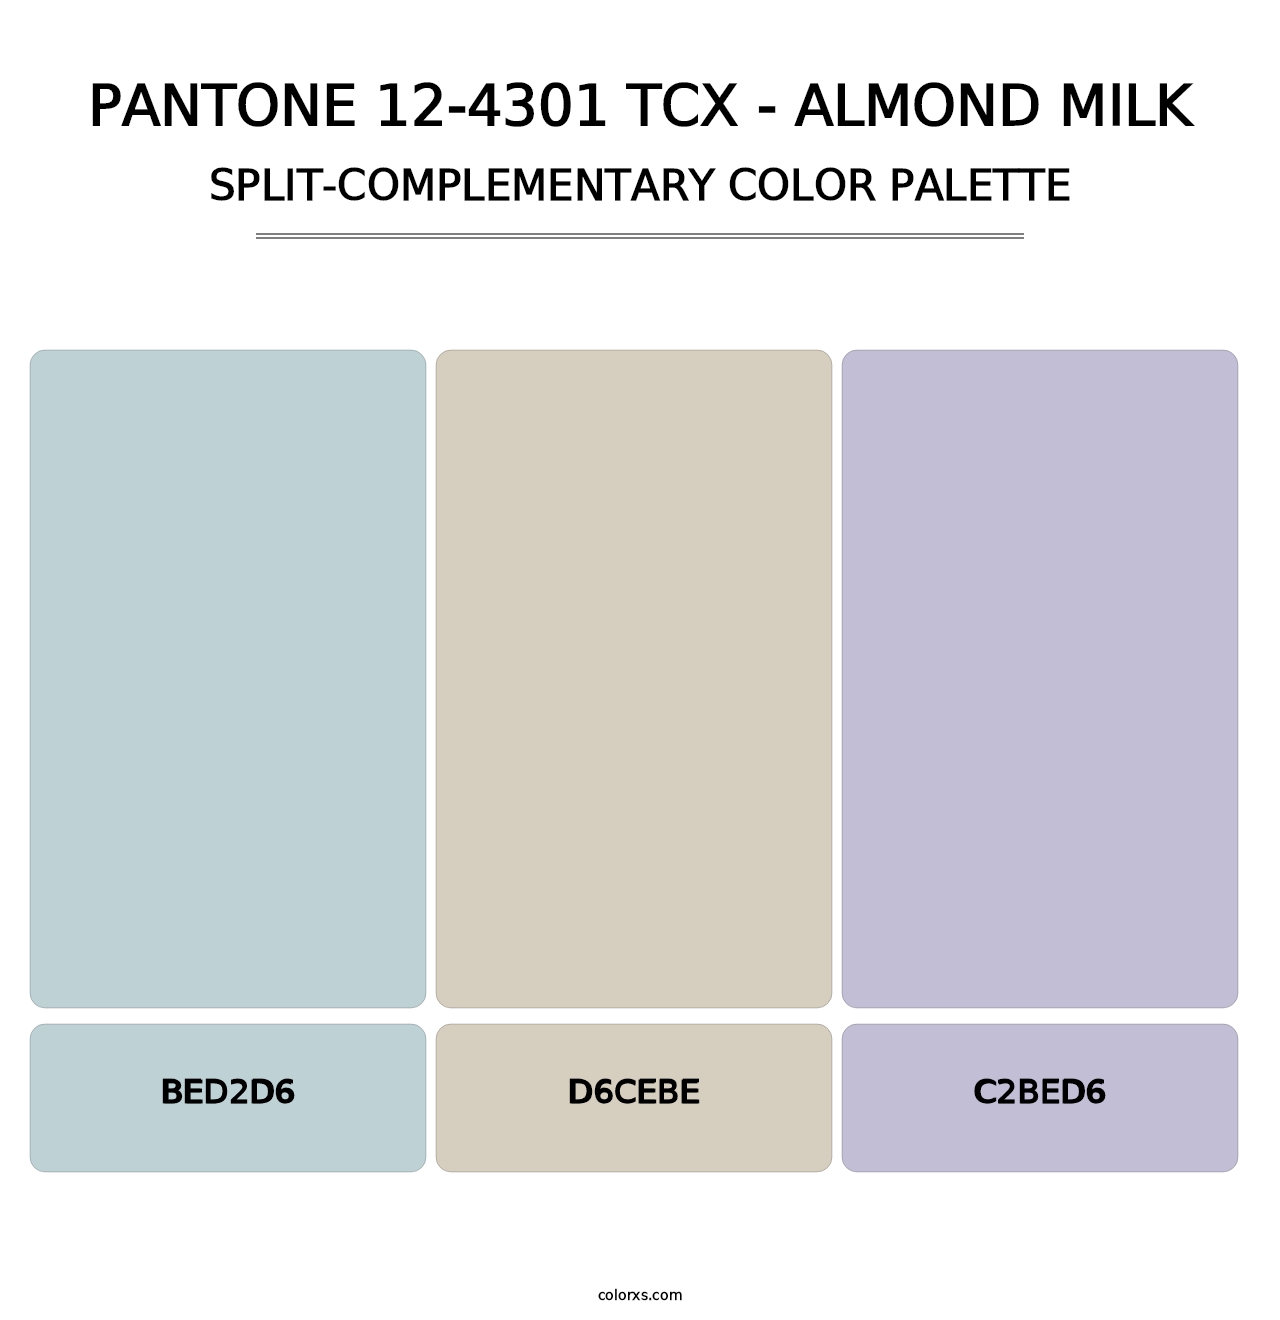 PANTONE 12-4301 TCX - Almond Milk - Split-Complementary Color Palette